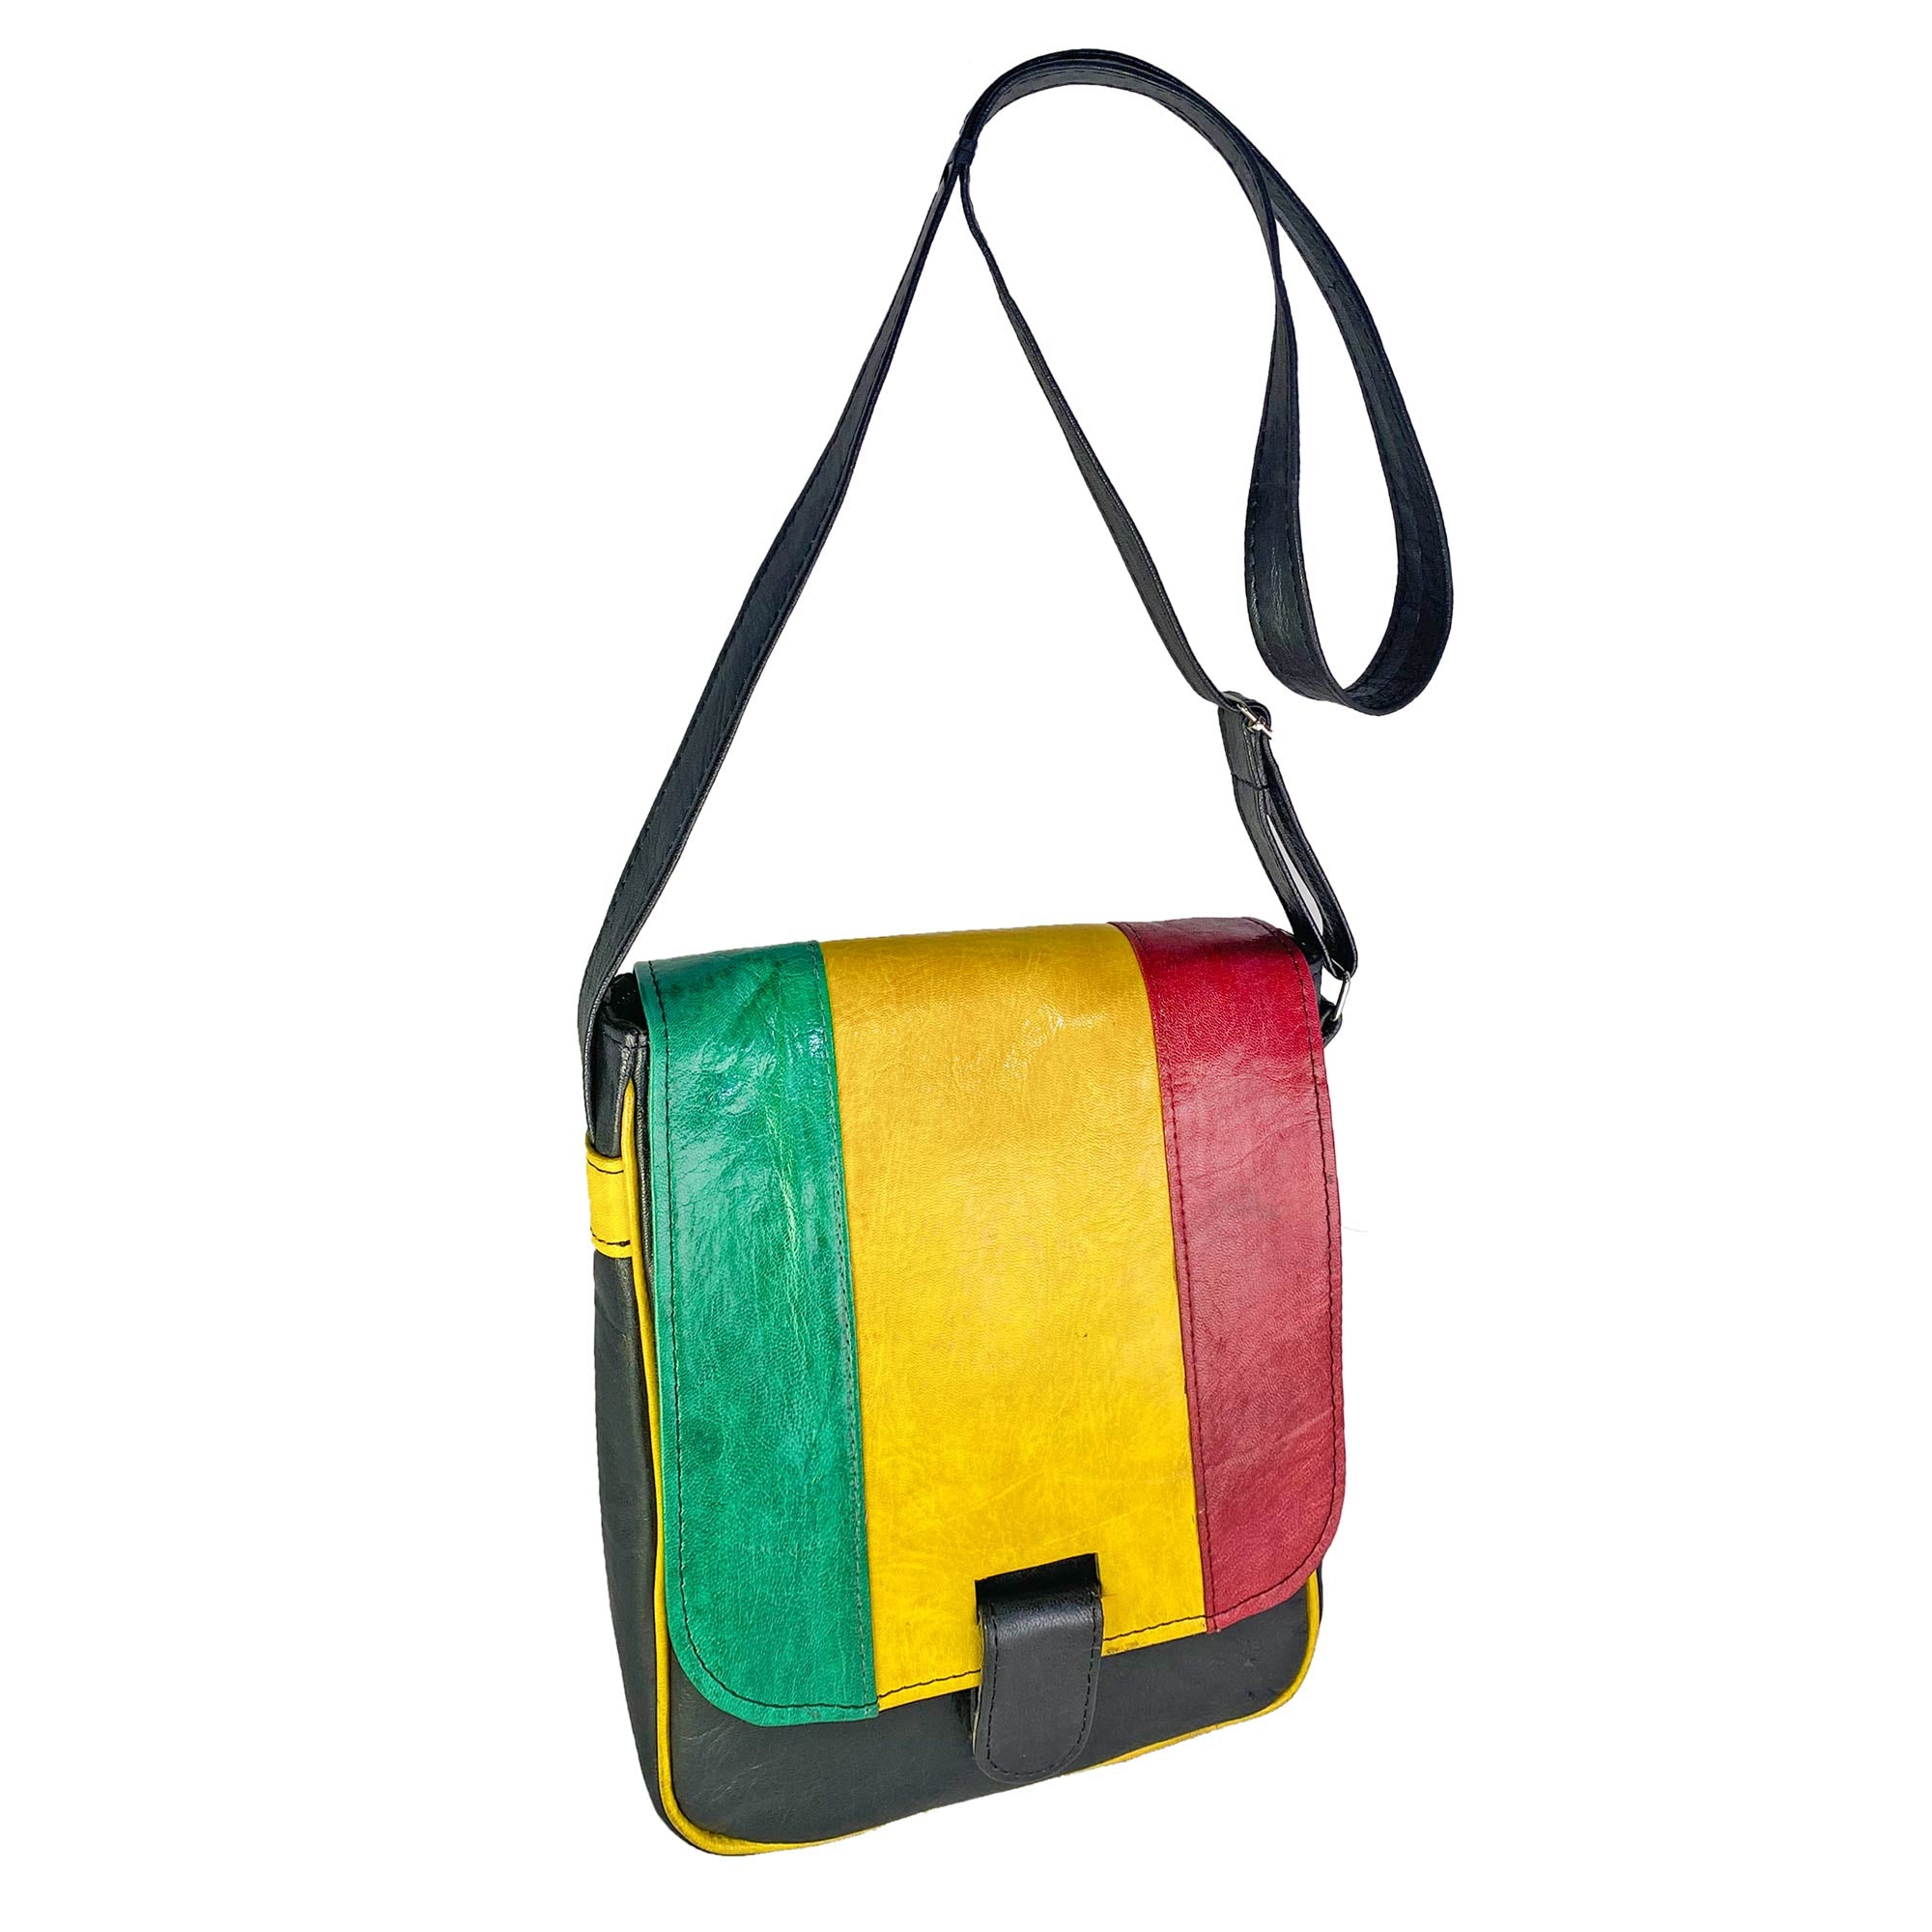 Mali-Made Small Leather Messenger Handbag